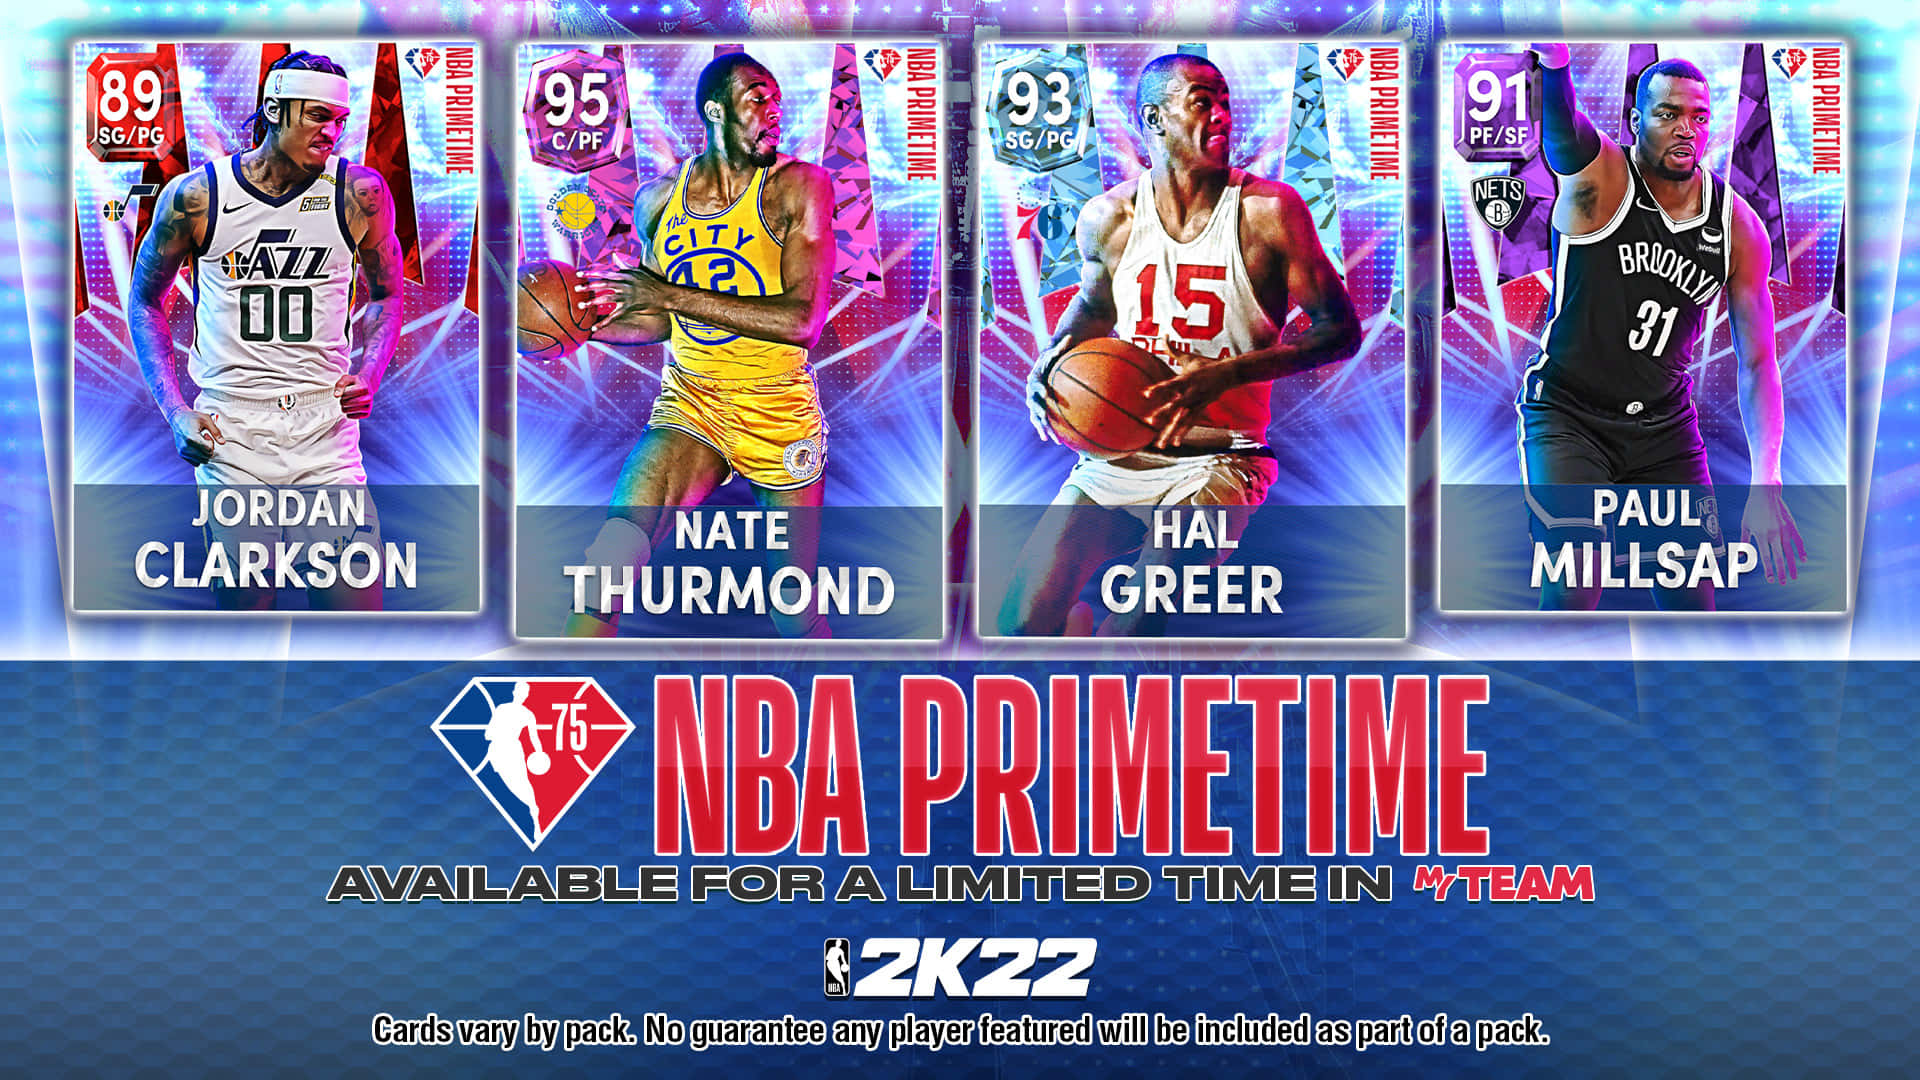 Hal Greer NBA2K Card Game Wallpaper